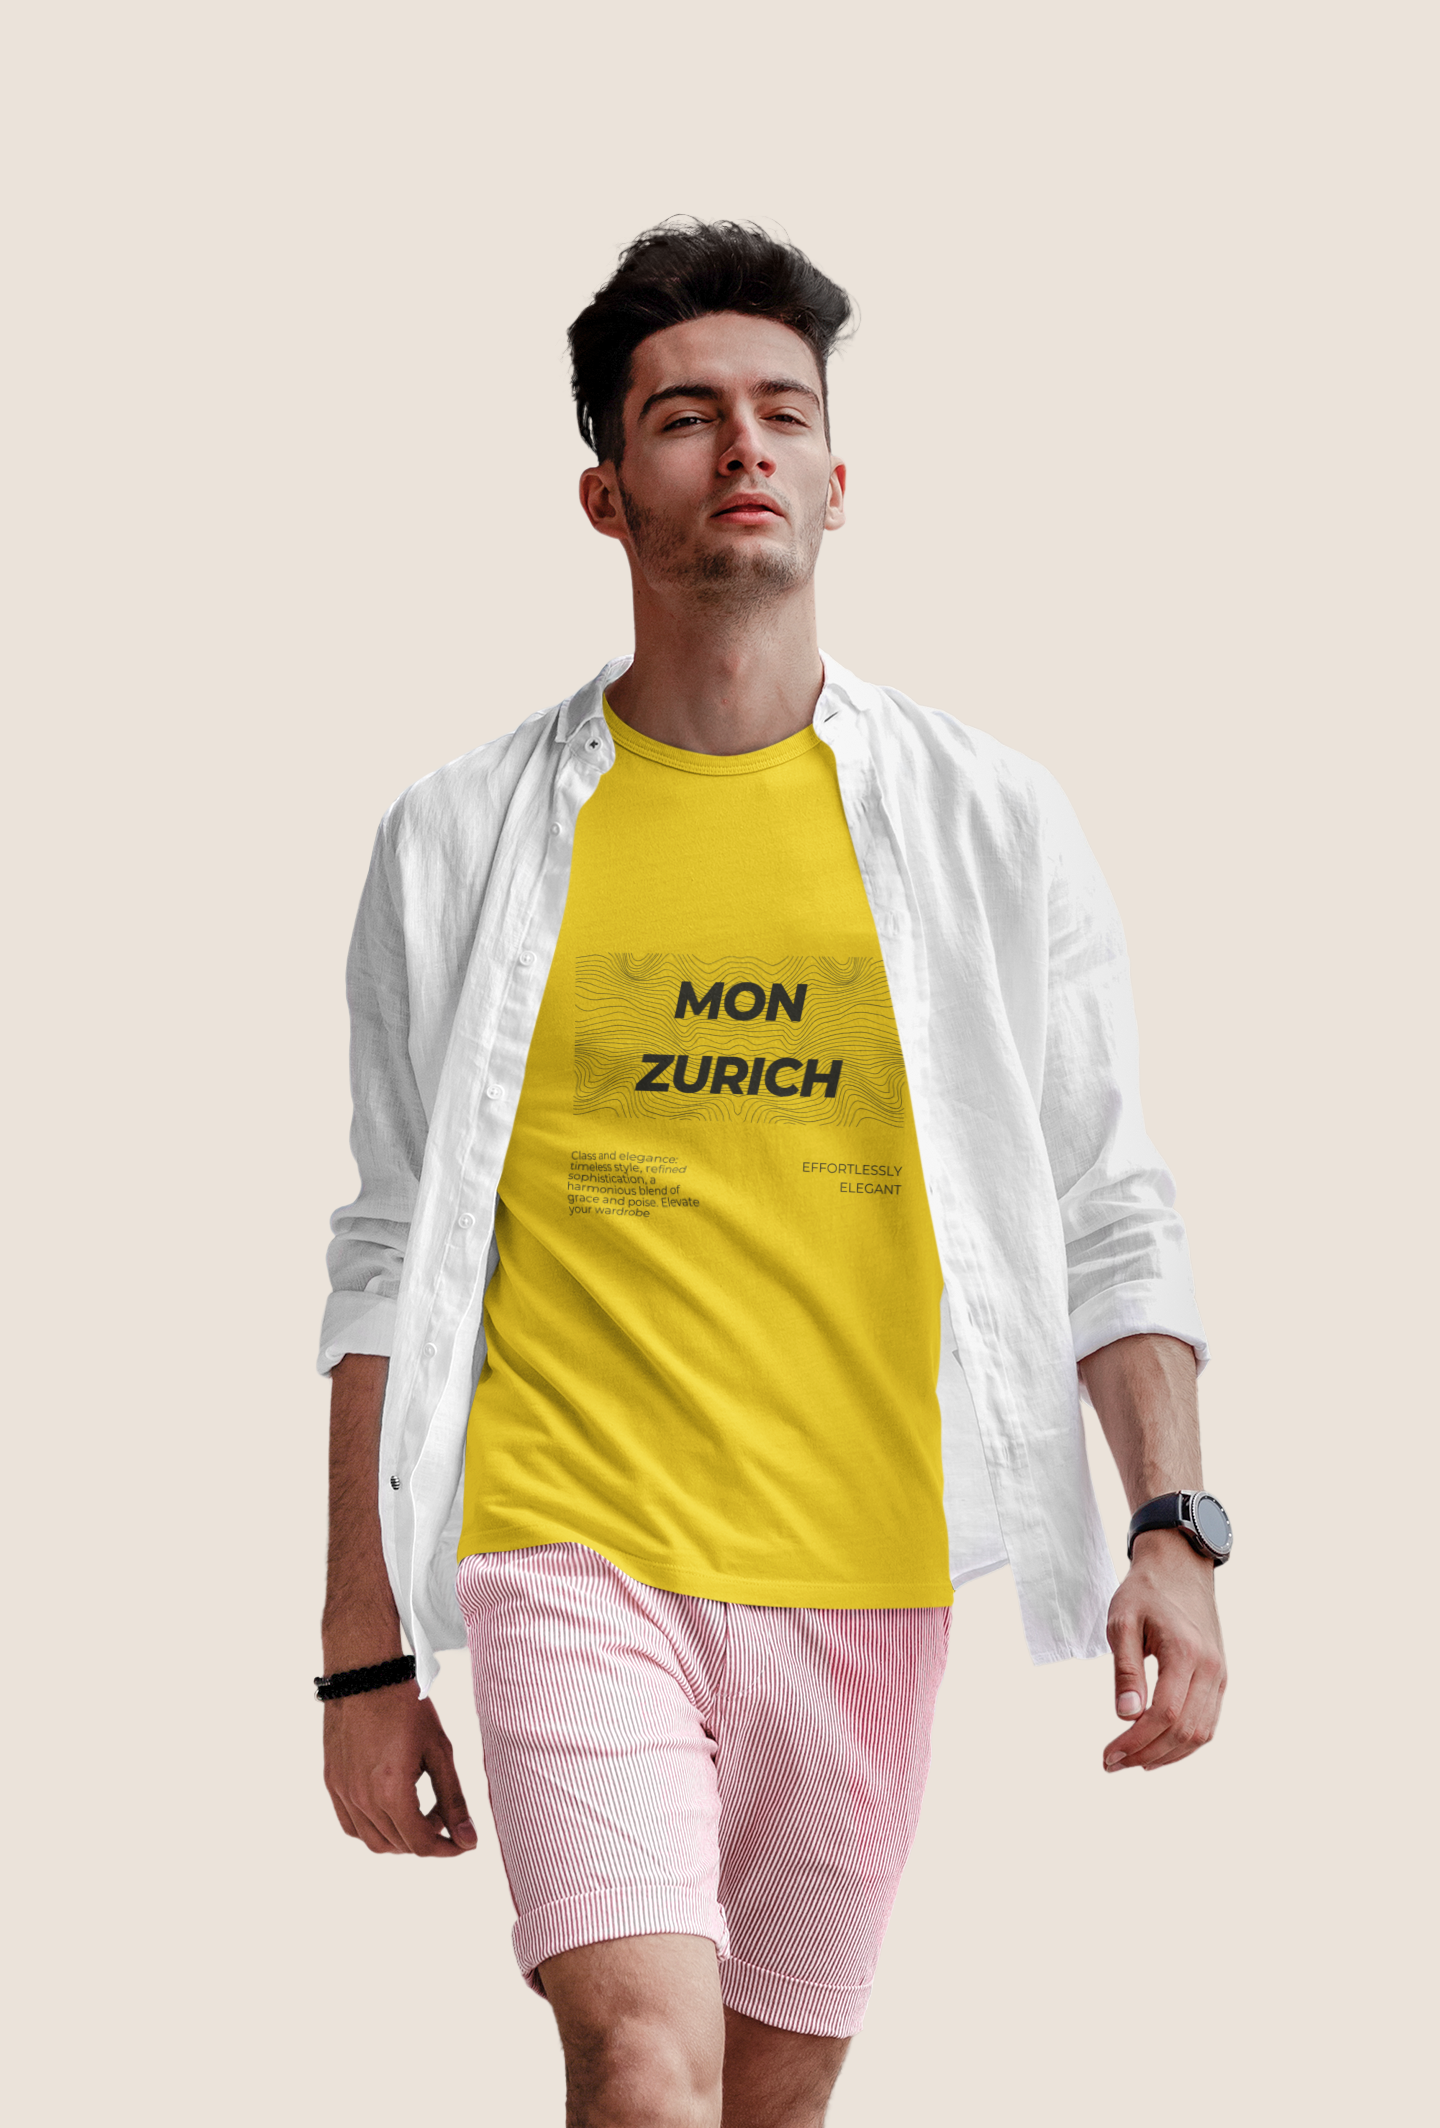 Mon Zurich T-Shirt In Light - Mon Zurich Originals